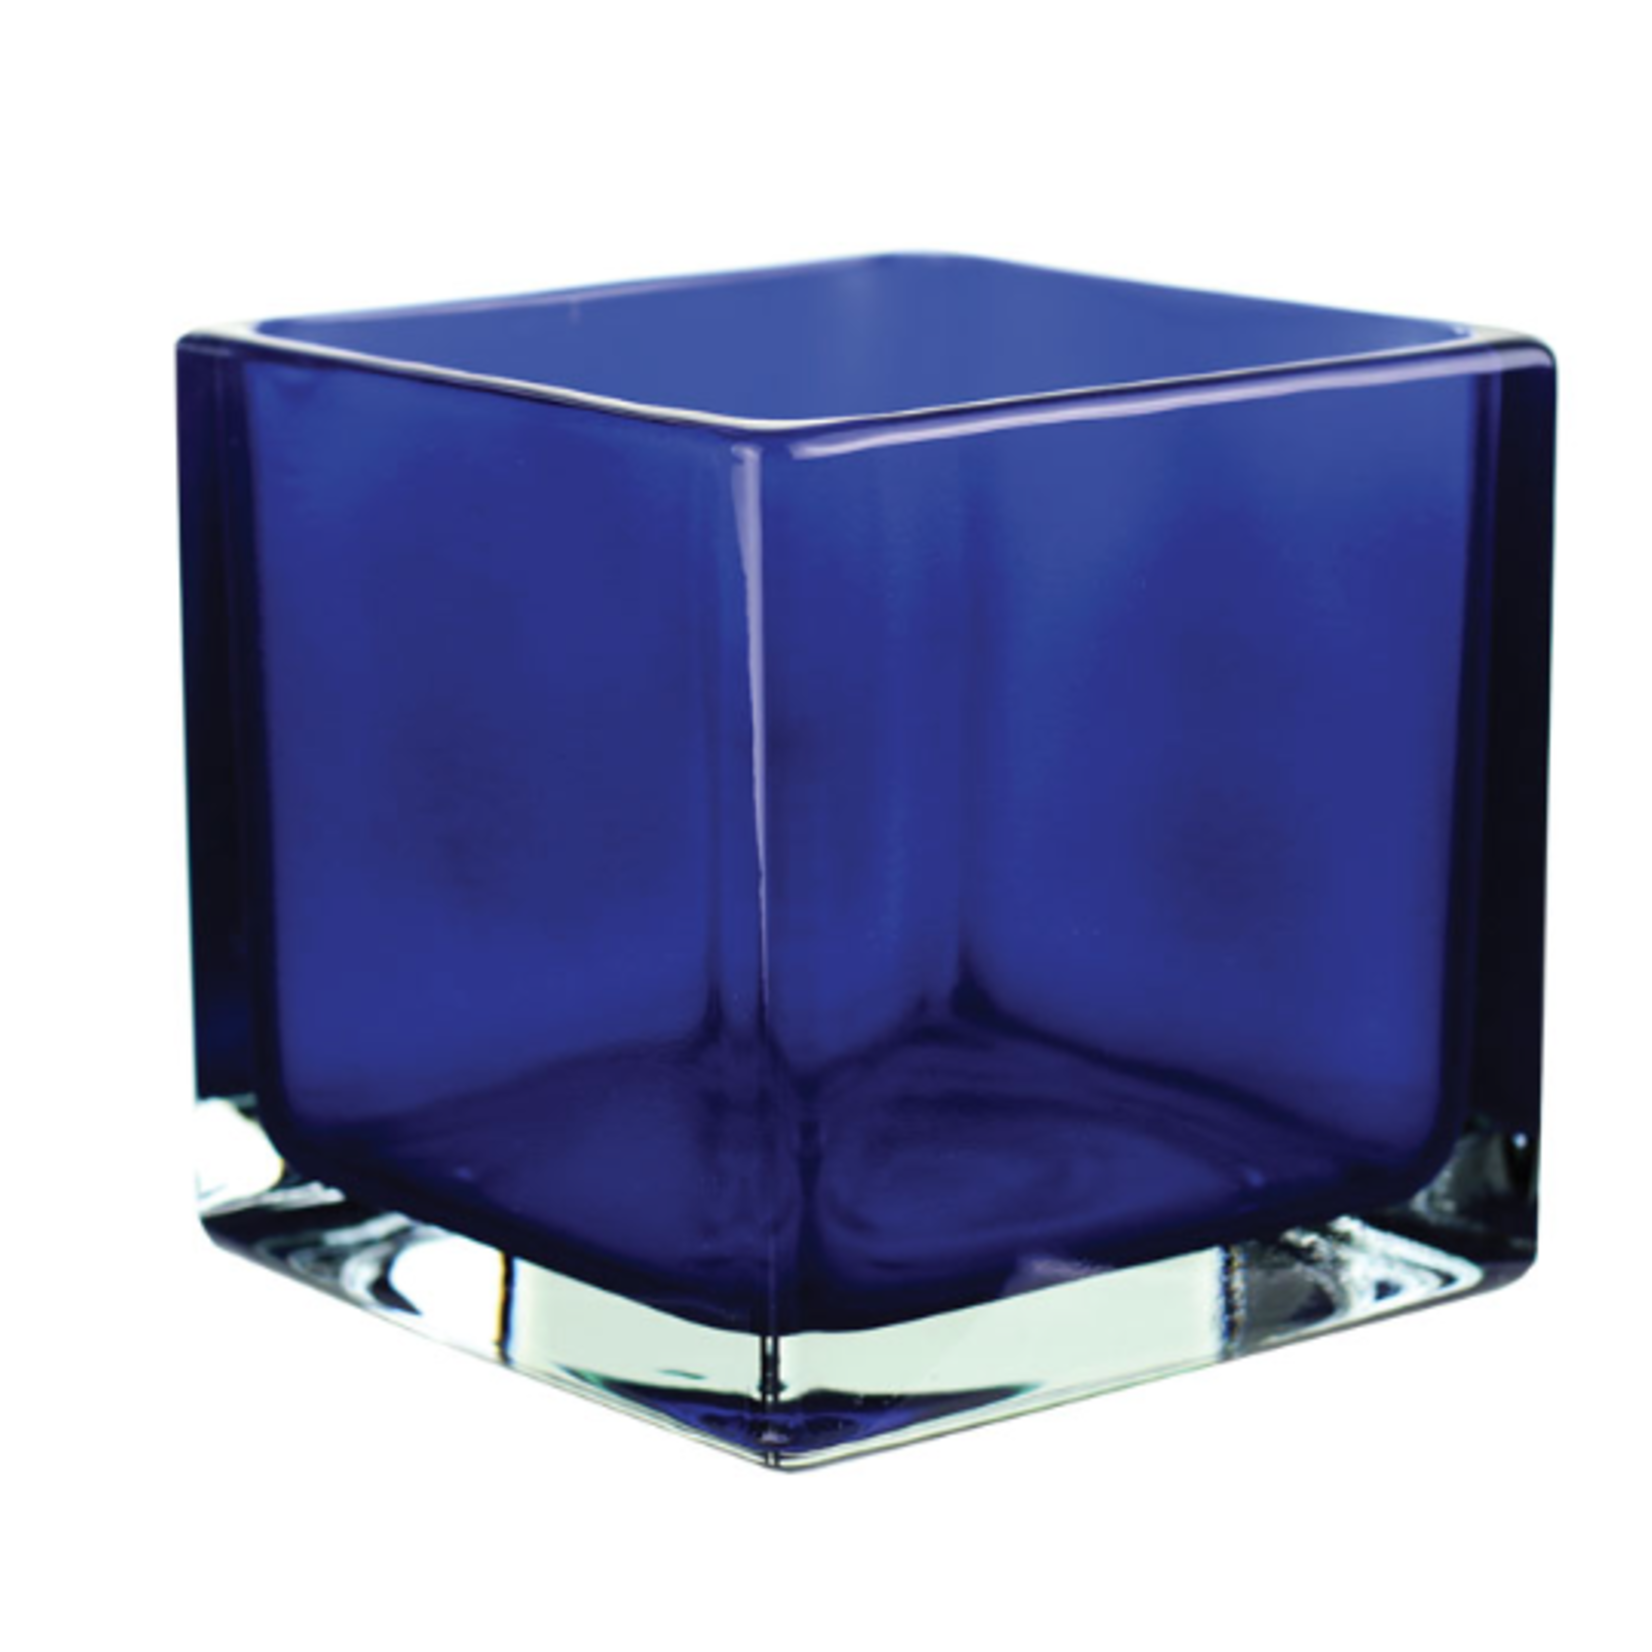 4” x 4” x 4” COBALT BLUE GLASS CUBE